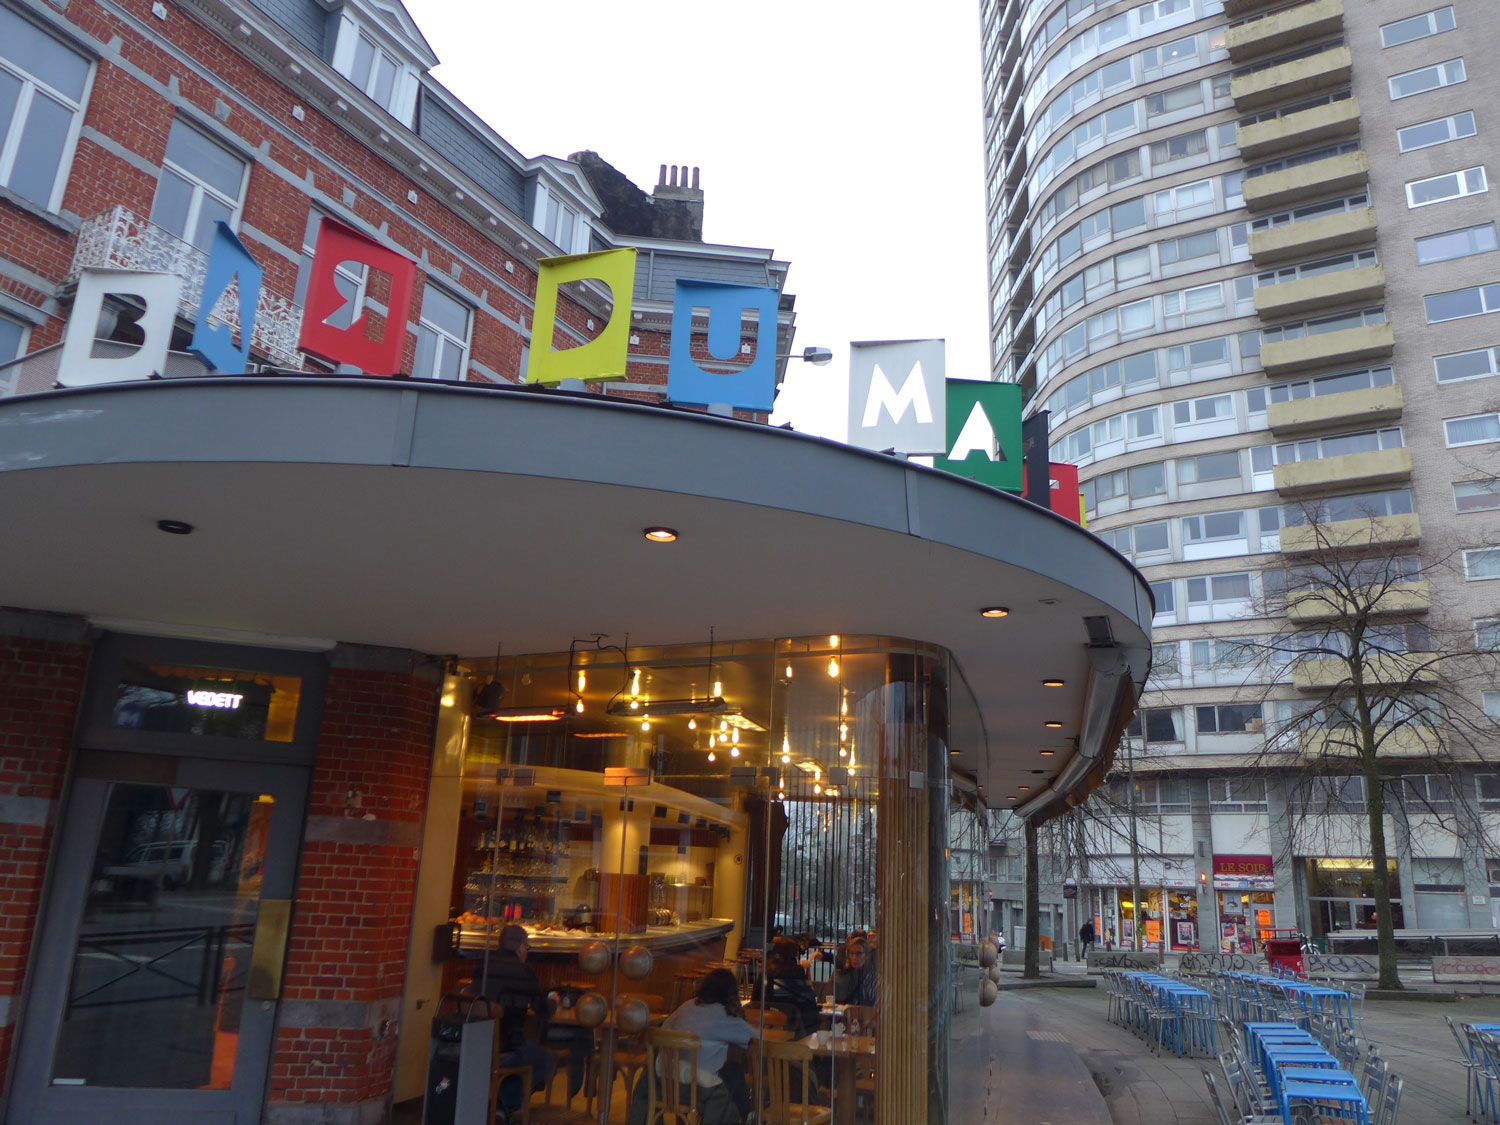 Le Bar du matin, un concept qu’on retrouve à plusieurs endroits de Bruxelles